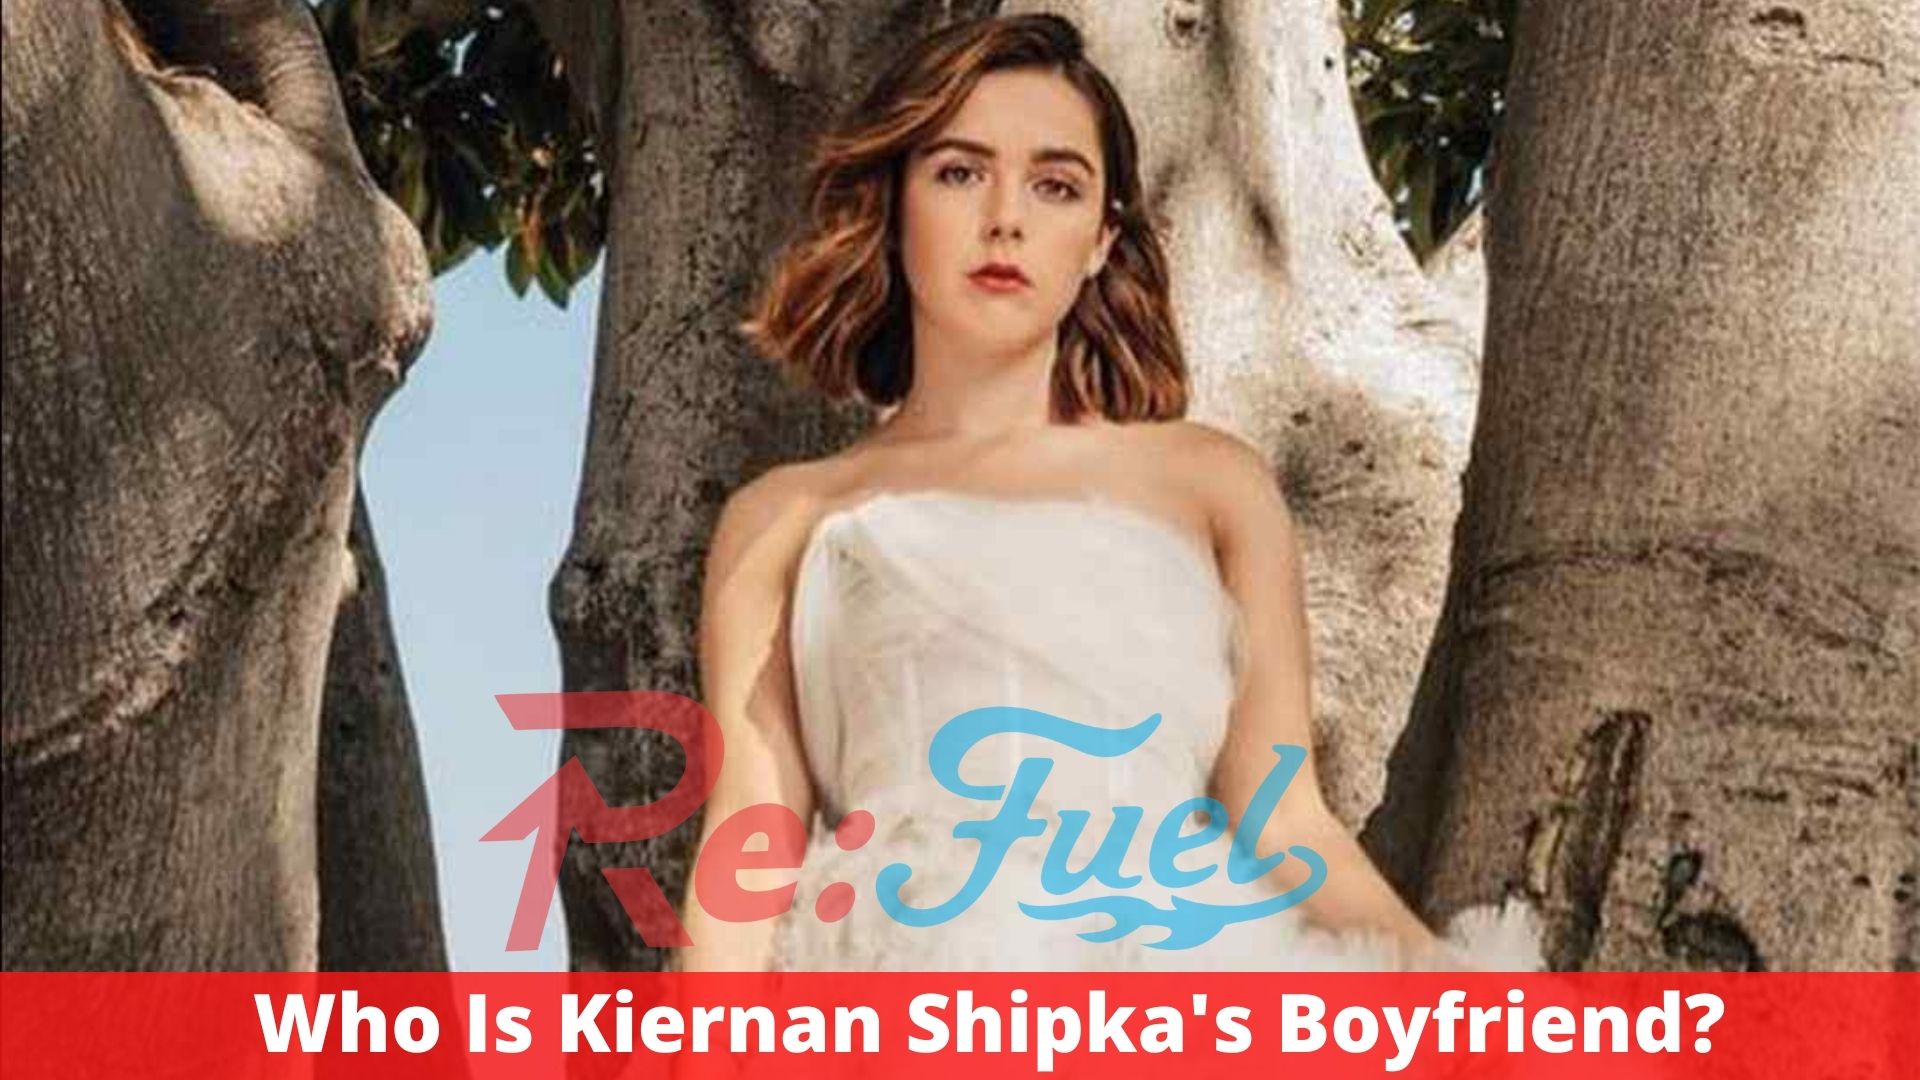 Who Is Kiernan Shipka's Boyfriend?